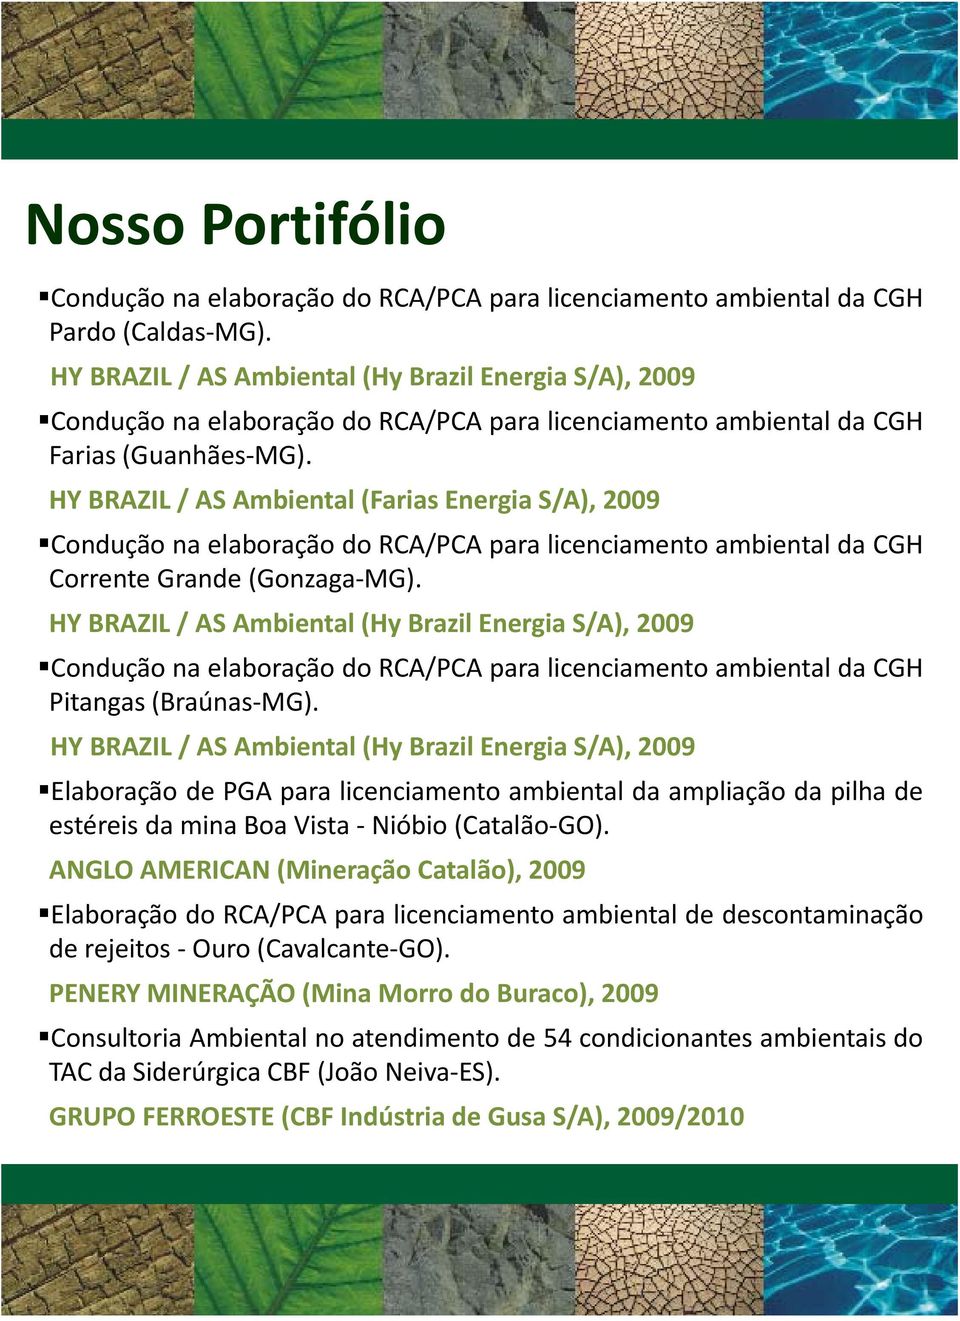 HY BRAZIL / AS Ambiental (Hy Brazil Energia S/A), 2009 Elaboração de PGA para licenciamento ambiental da ampliação da pilha de estéreis da mina Boa Vista Nióbio (Catalão GO) GO).